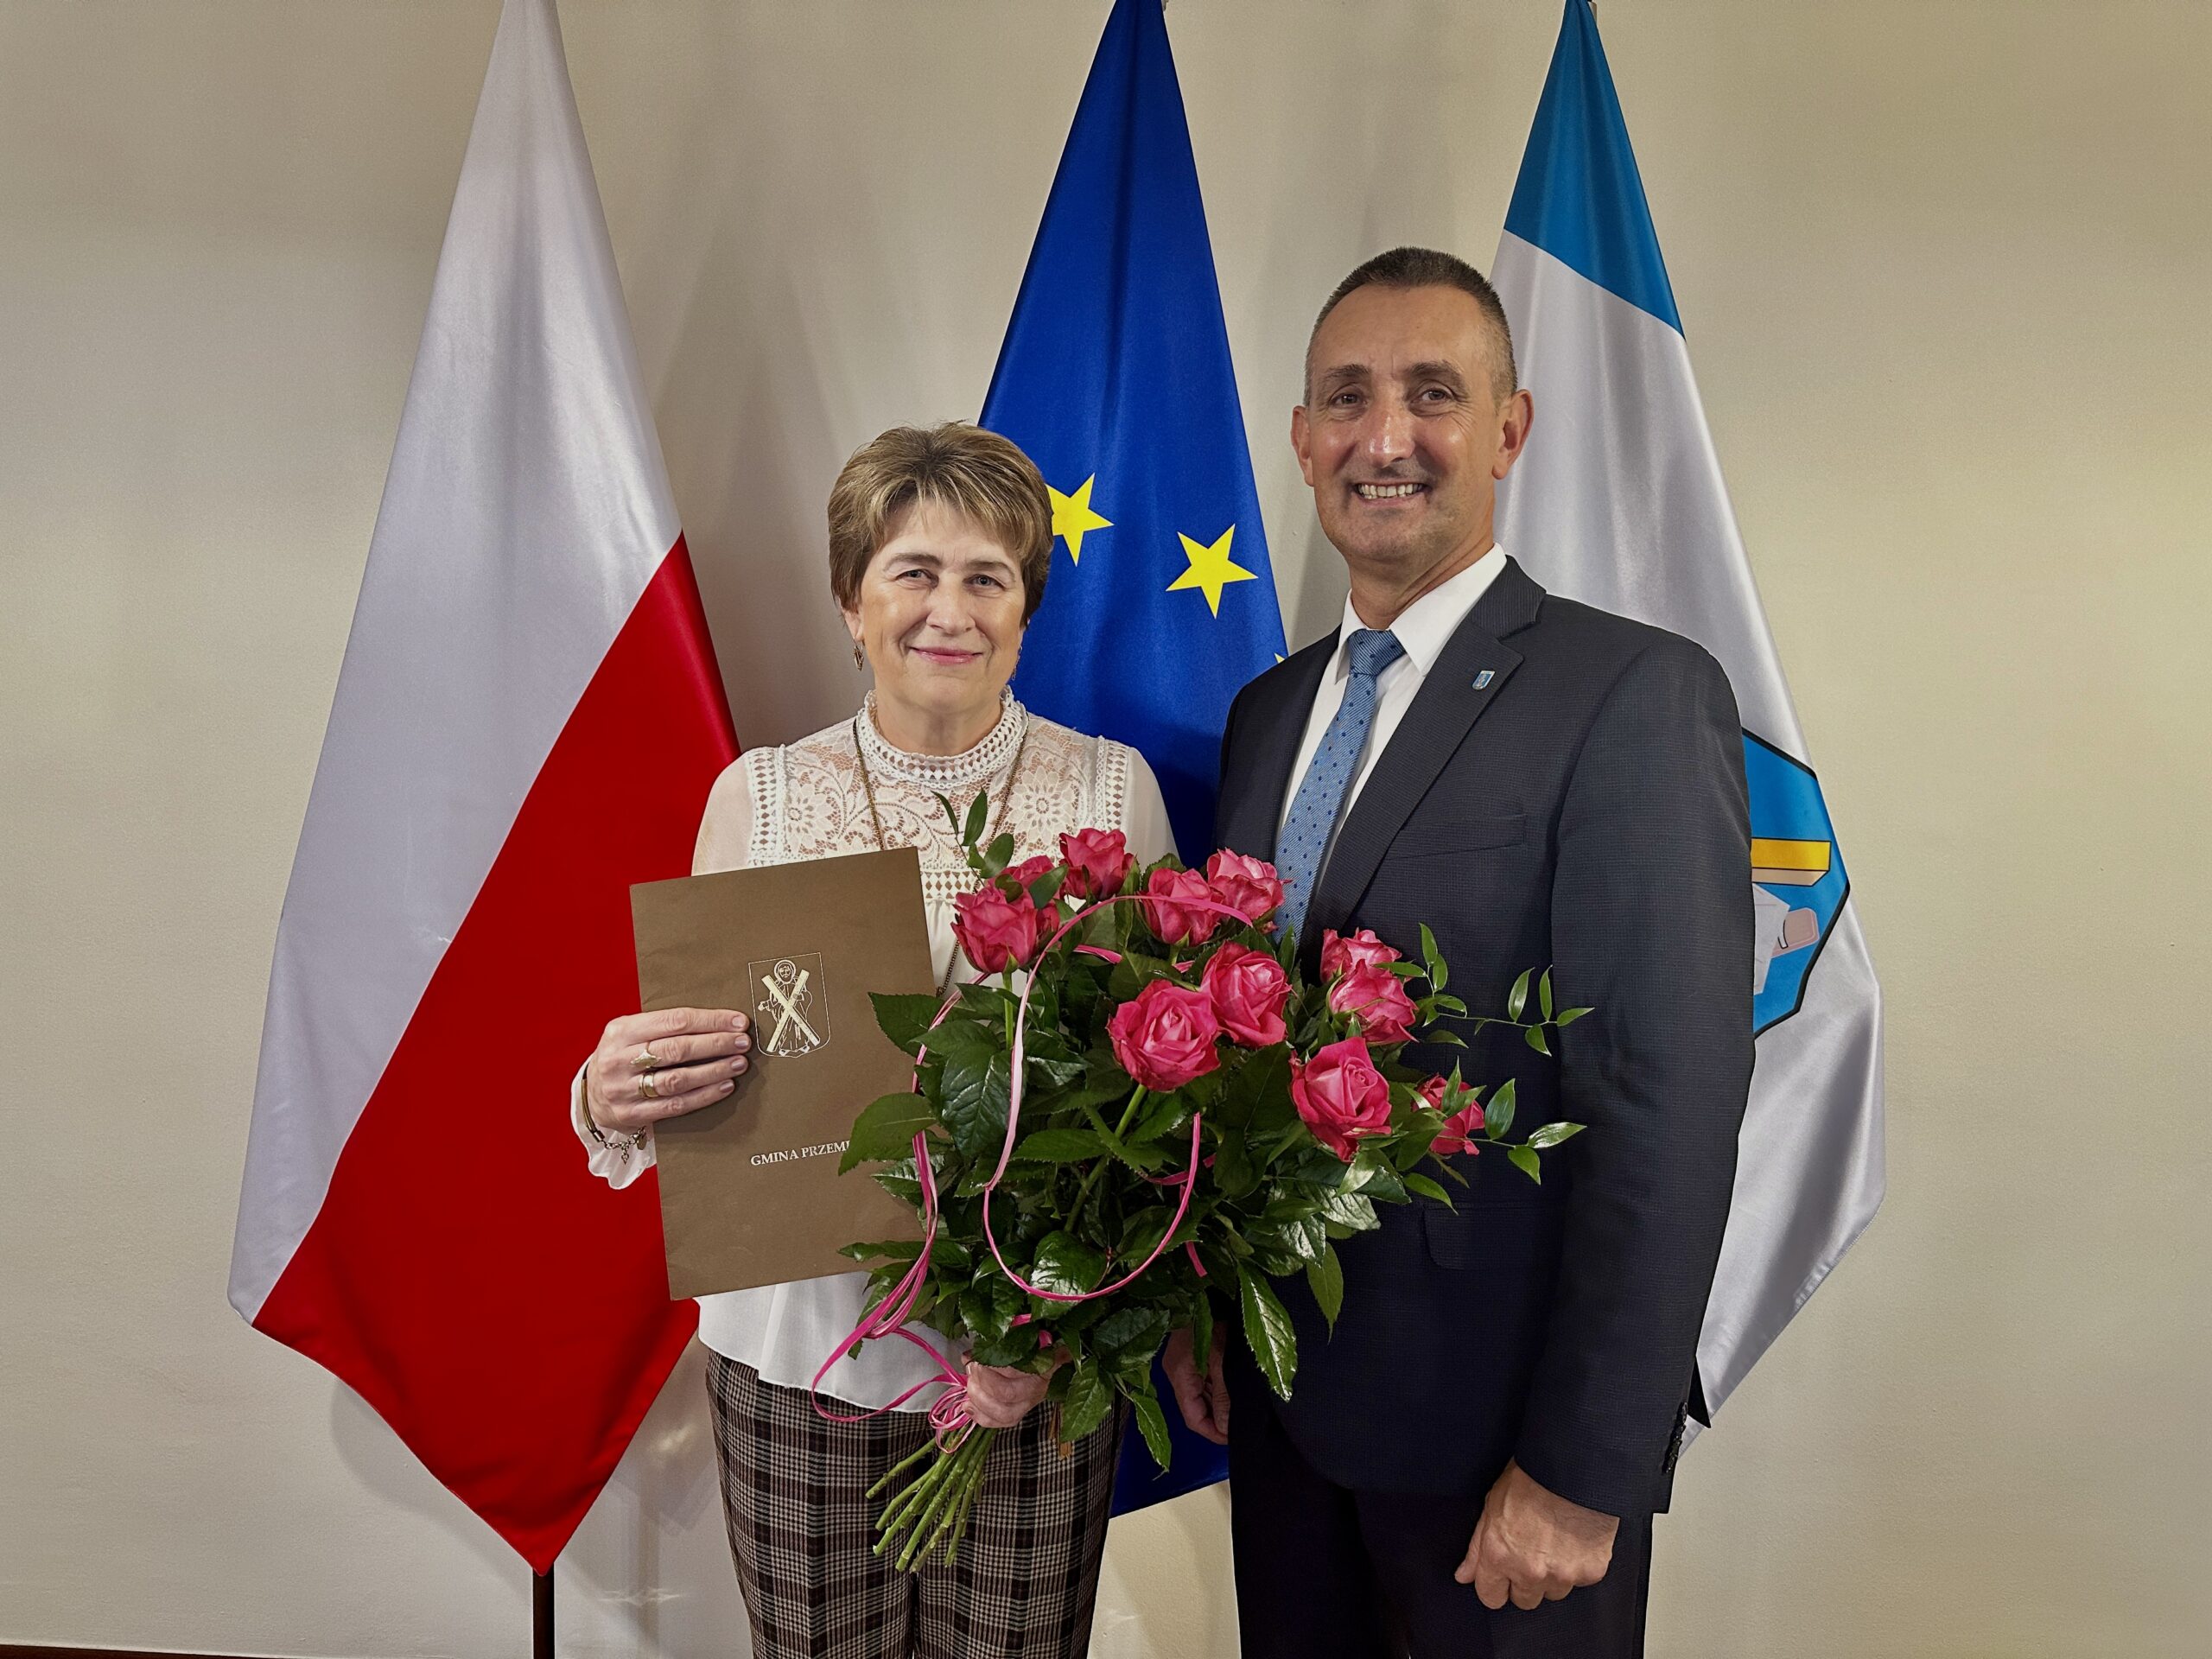 Na zdjęciu wójt Gminy Przemęt oraz Pani Jadwiga, która trzyma w ręce list gratulacyjny oraz bukiet różowych róż. Zdjęcie zrobiono w biurze wójta na tle flag.